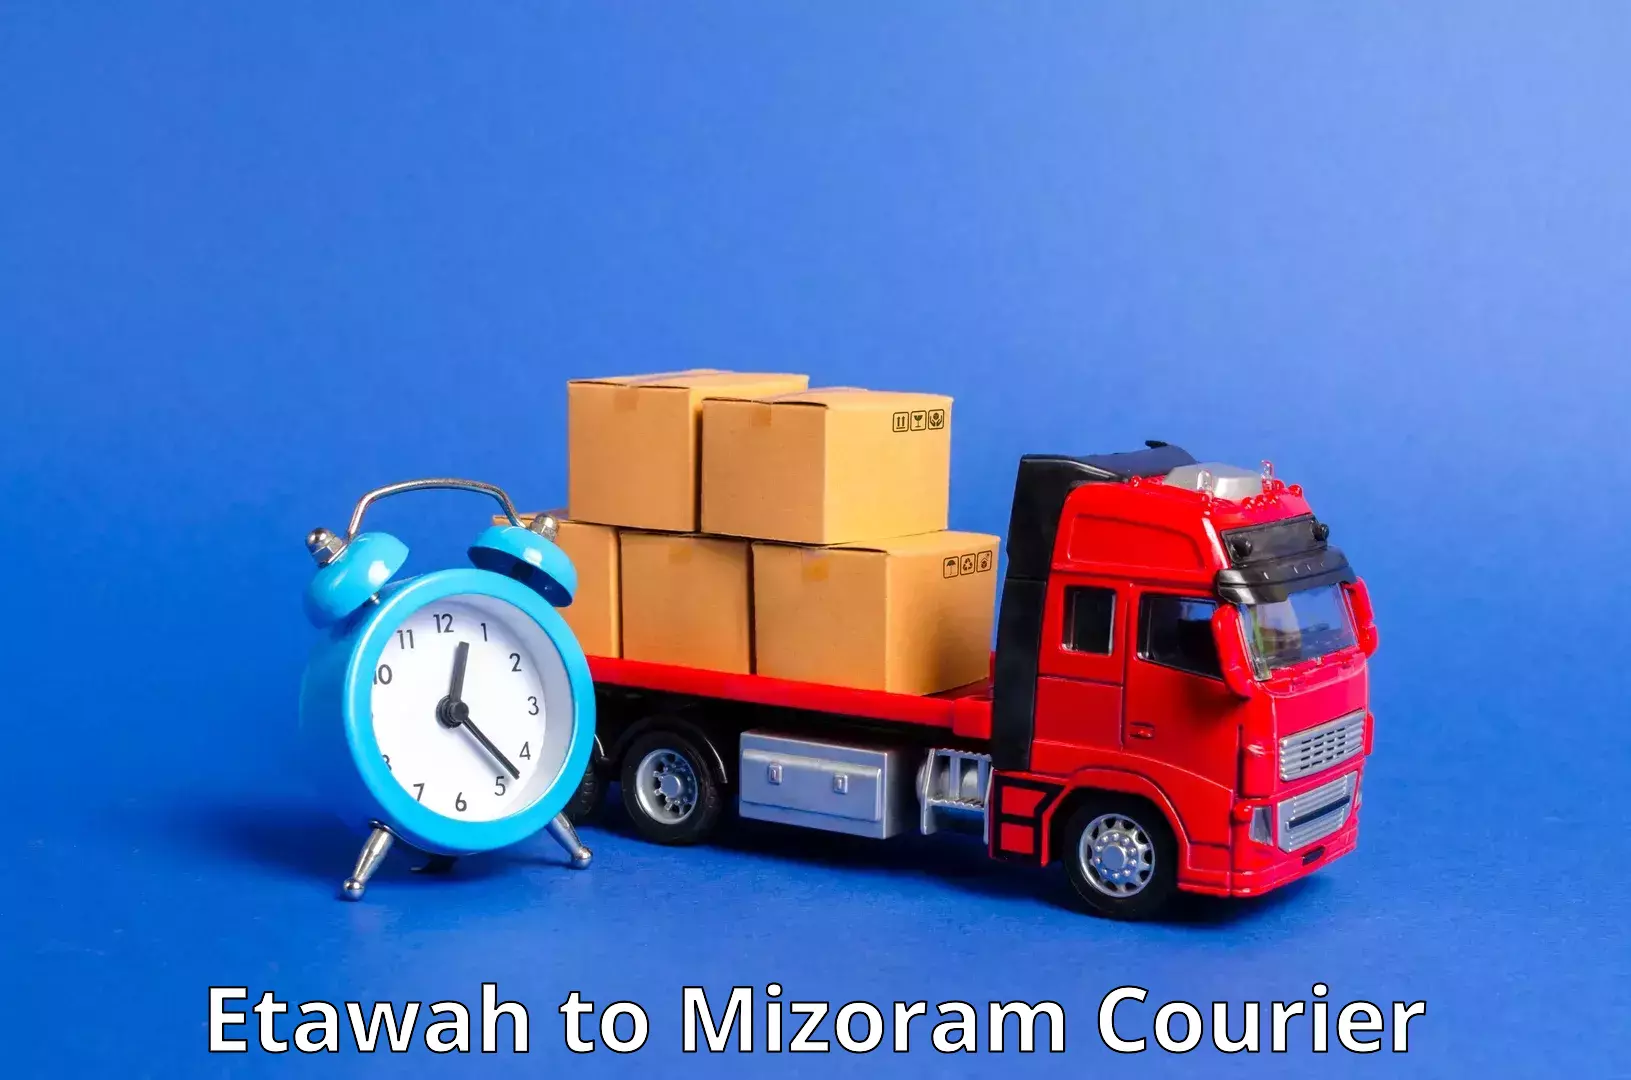 Tech-enabled shipping Etawah to Kolasib